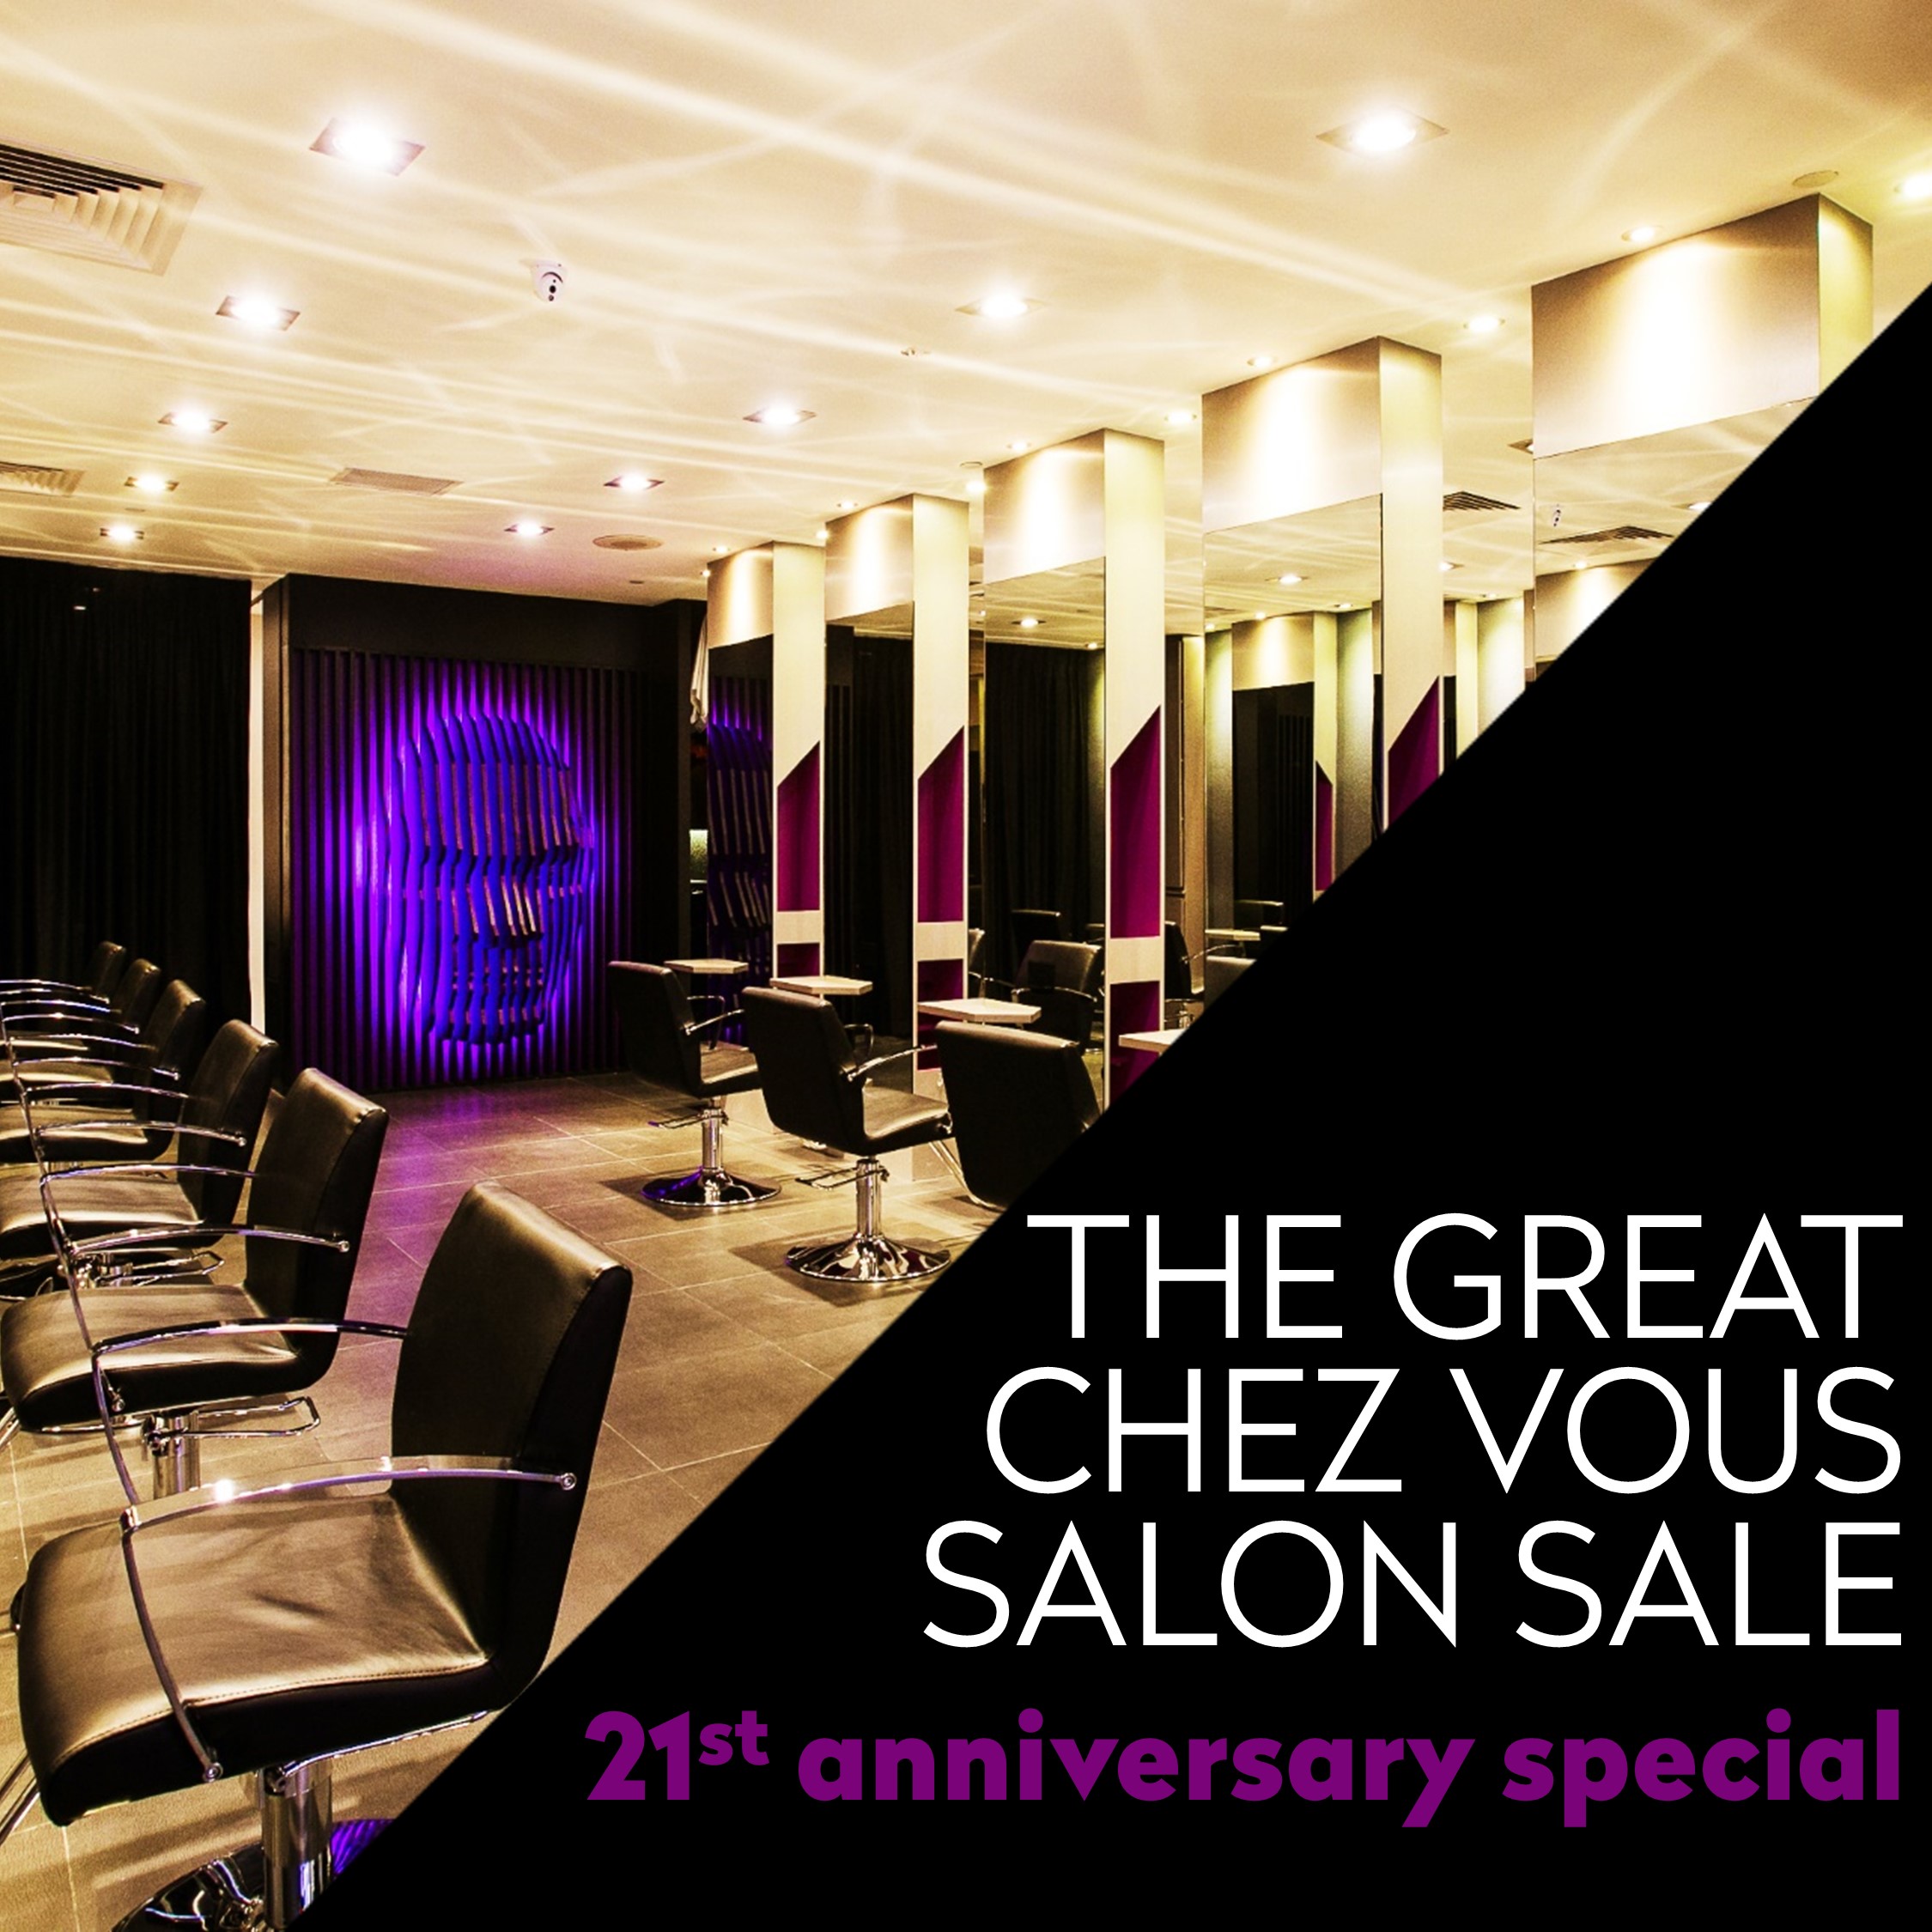 The Great Chez Vous Hair Salon Sale